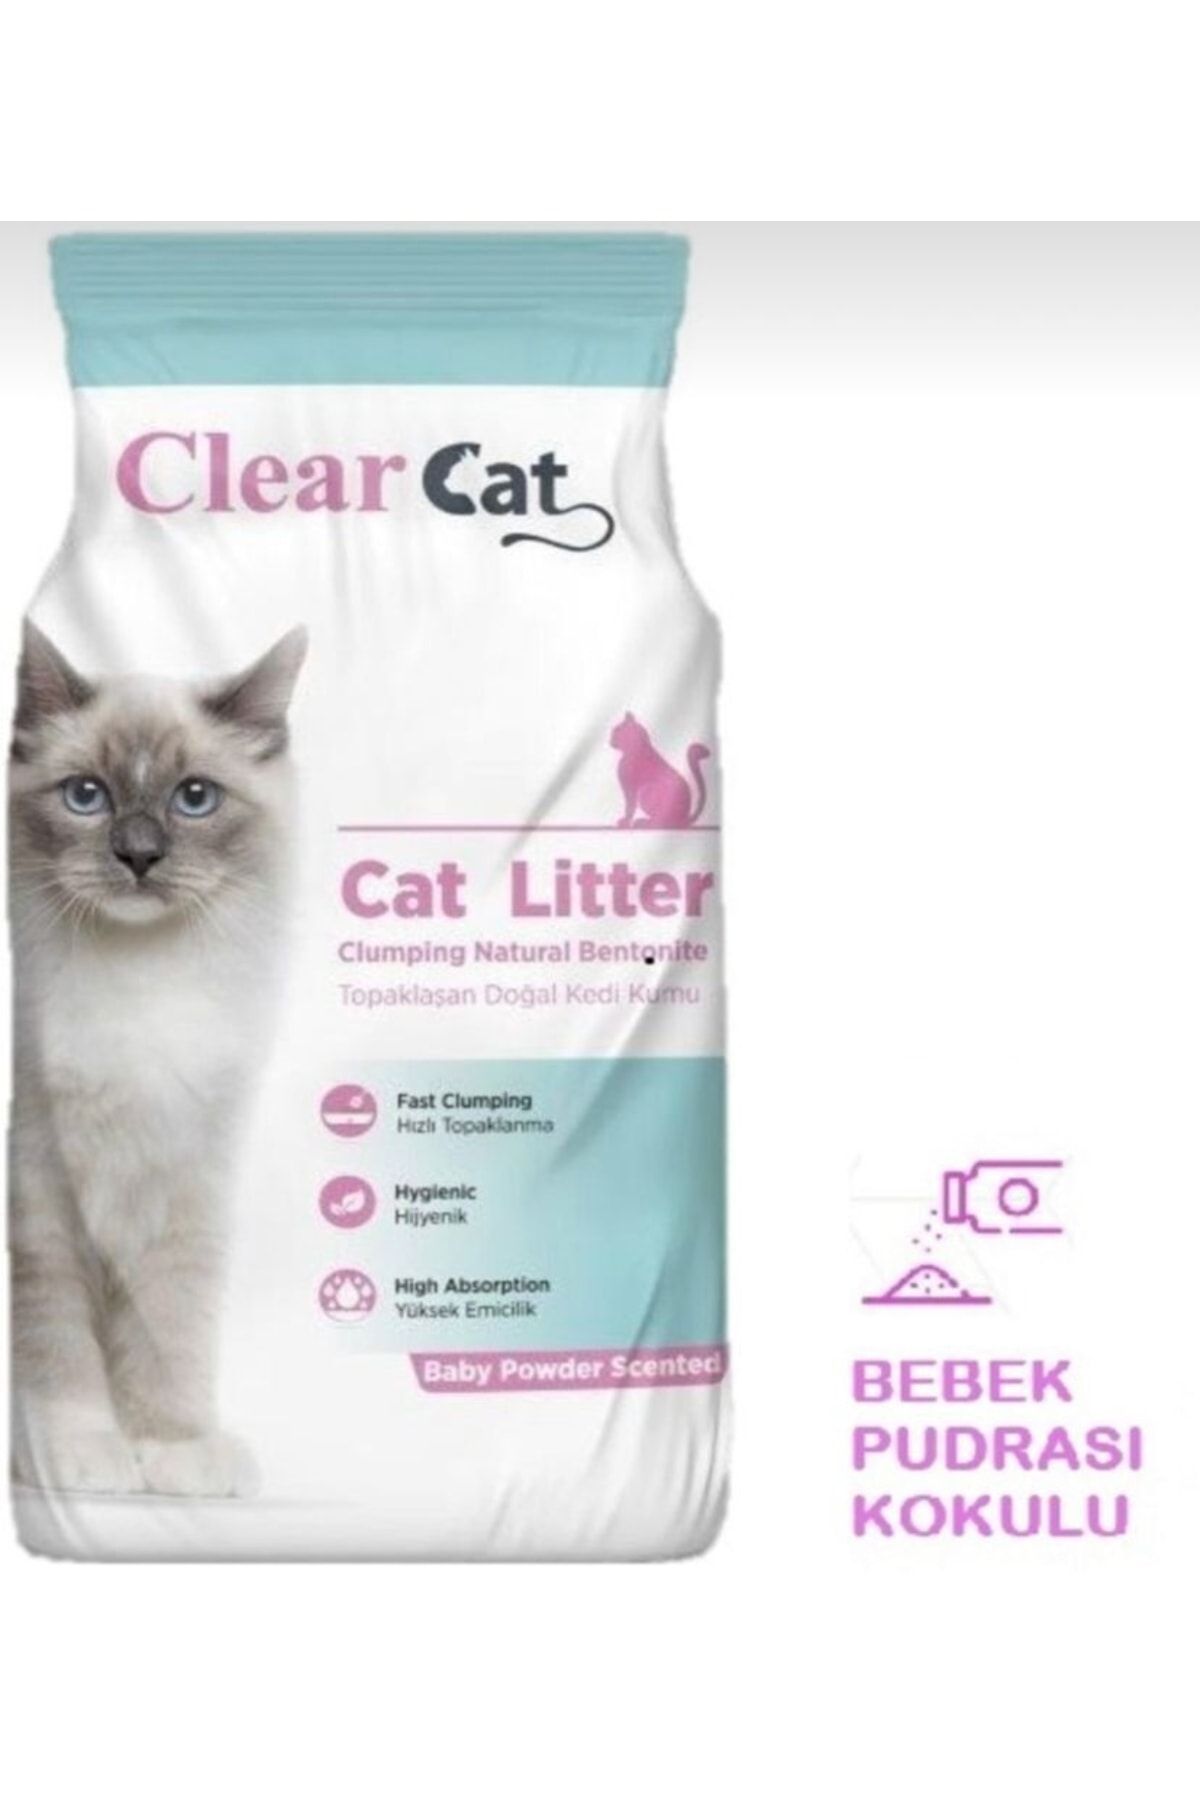 Clear Cat Kedi Kumu Bebek Pudrası Kokulu 5 kg